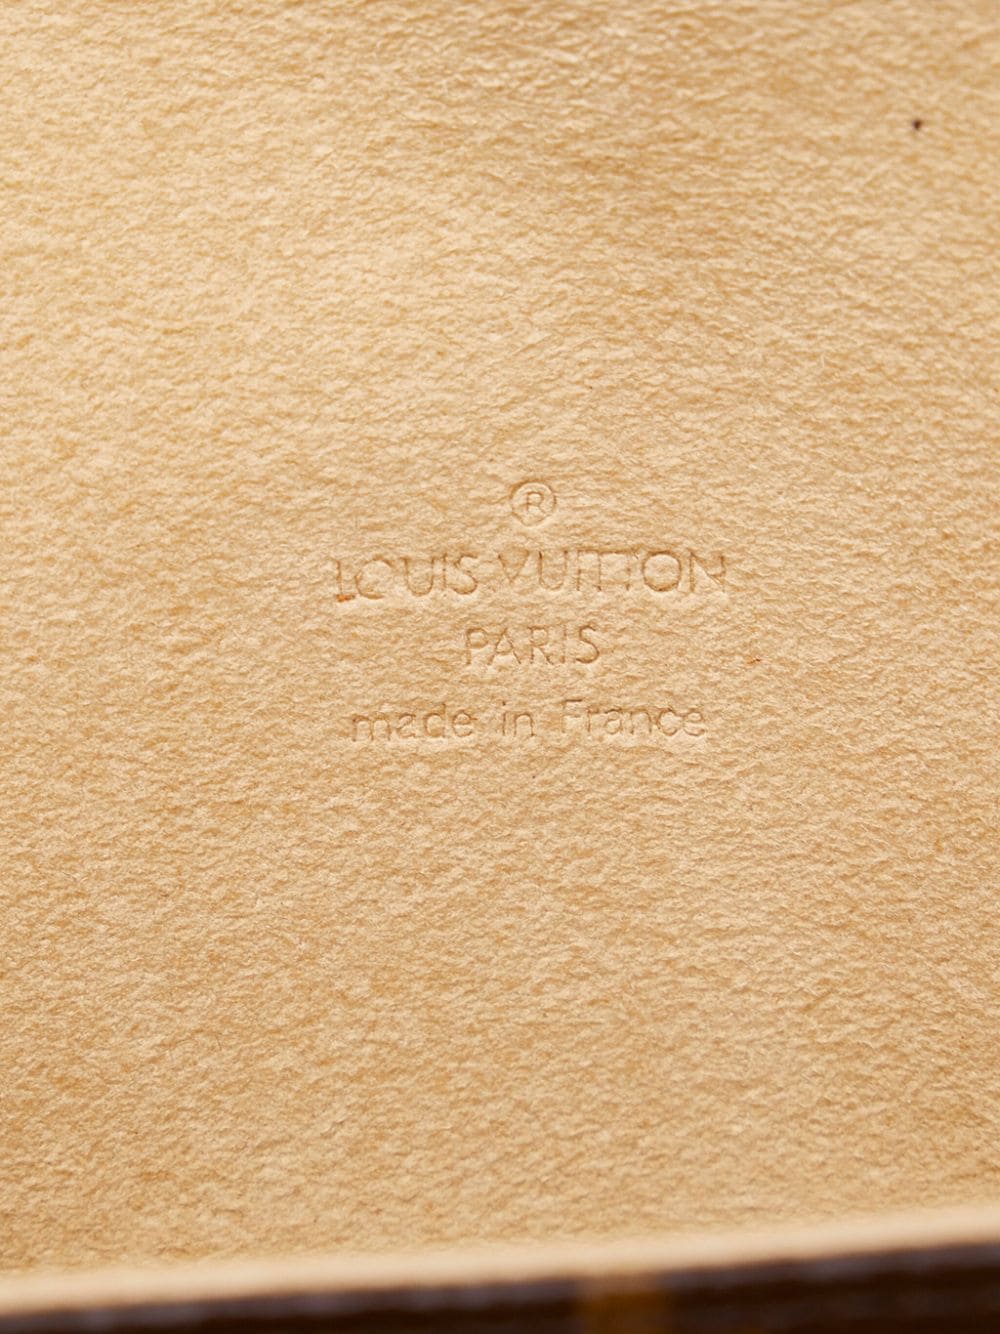 LOUIS VUITTON Monogram Pochette Florentine Belt Bag Brown M51855 90202856